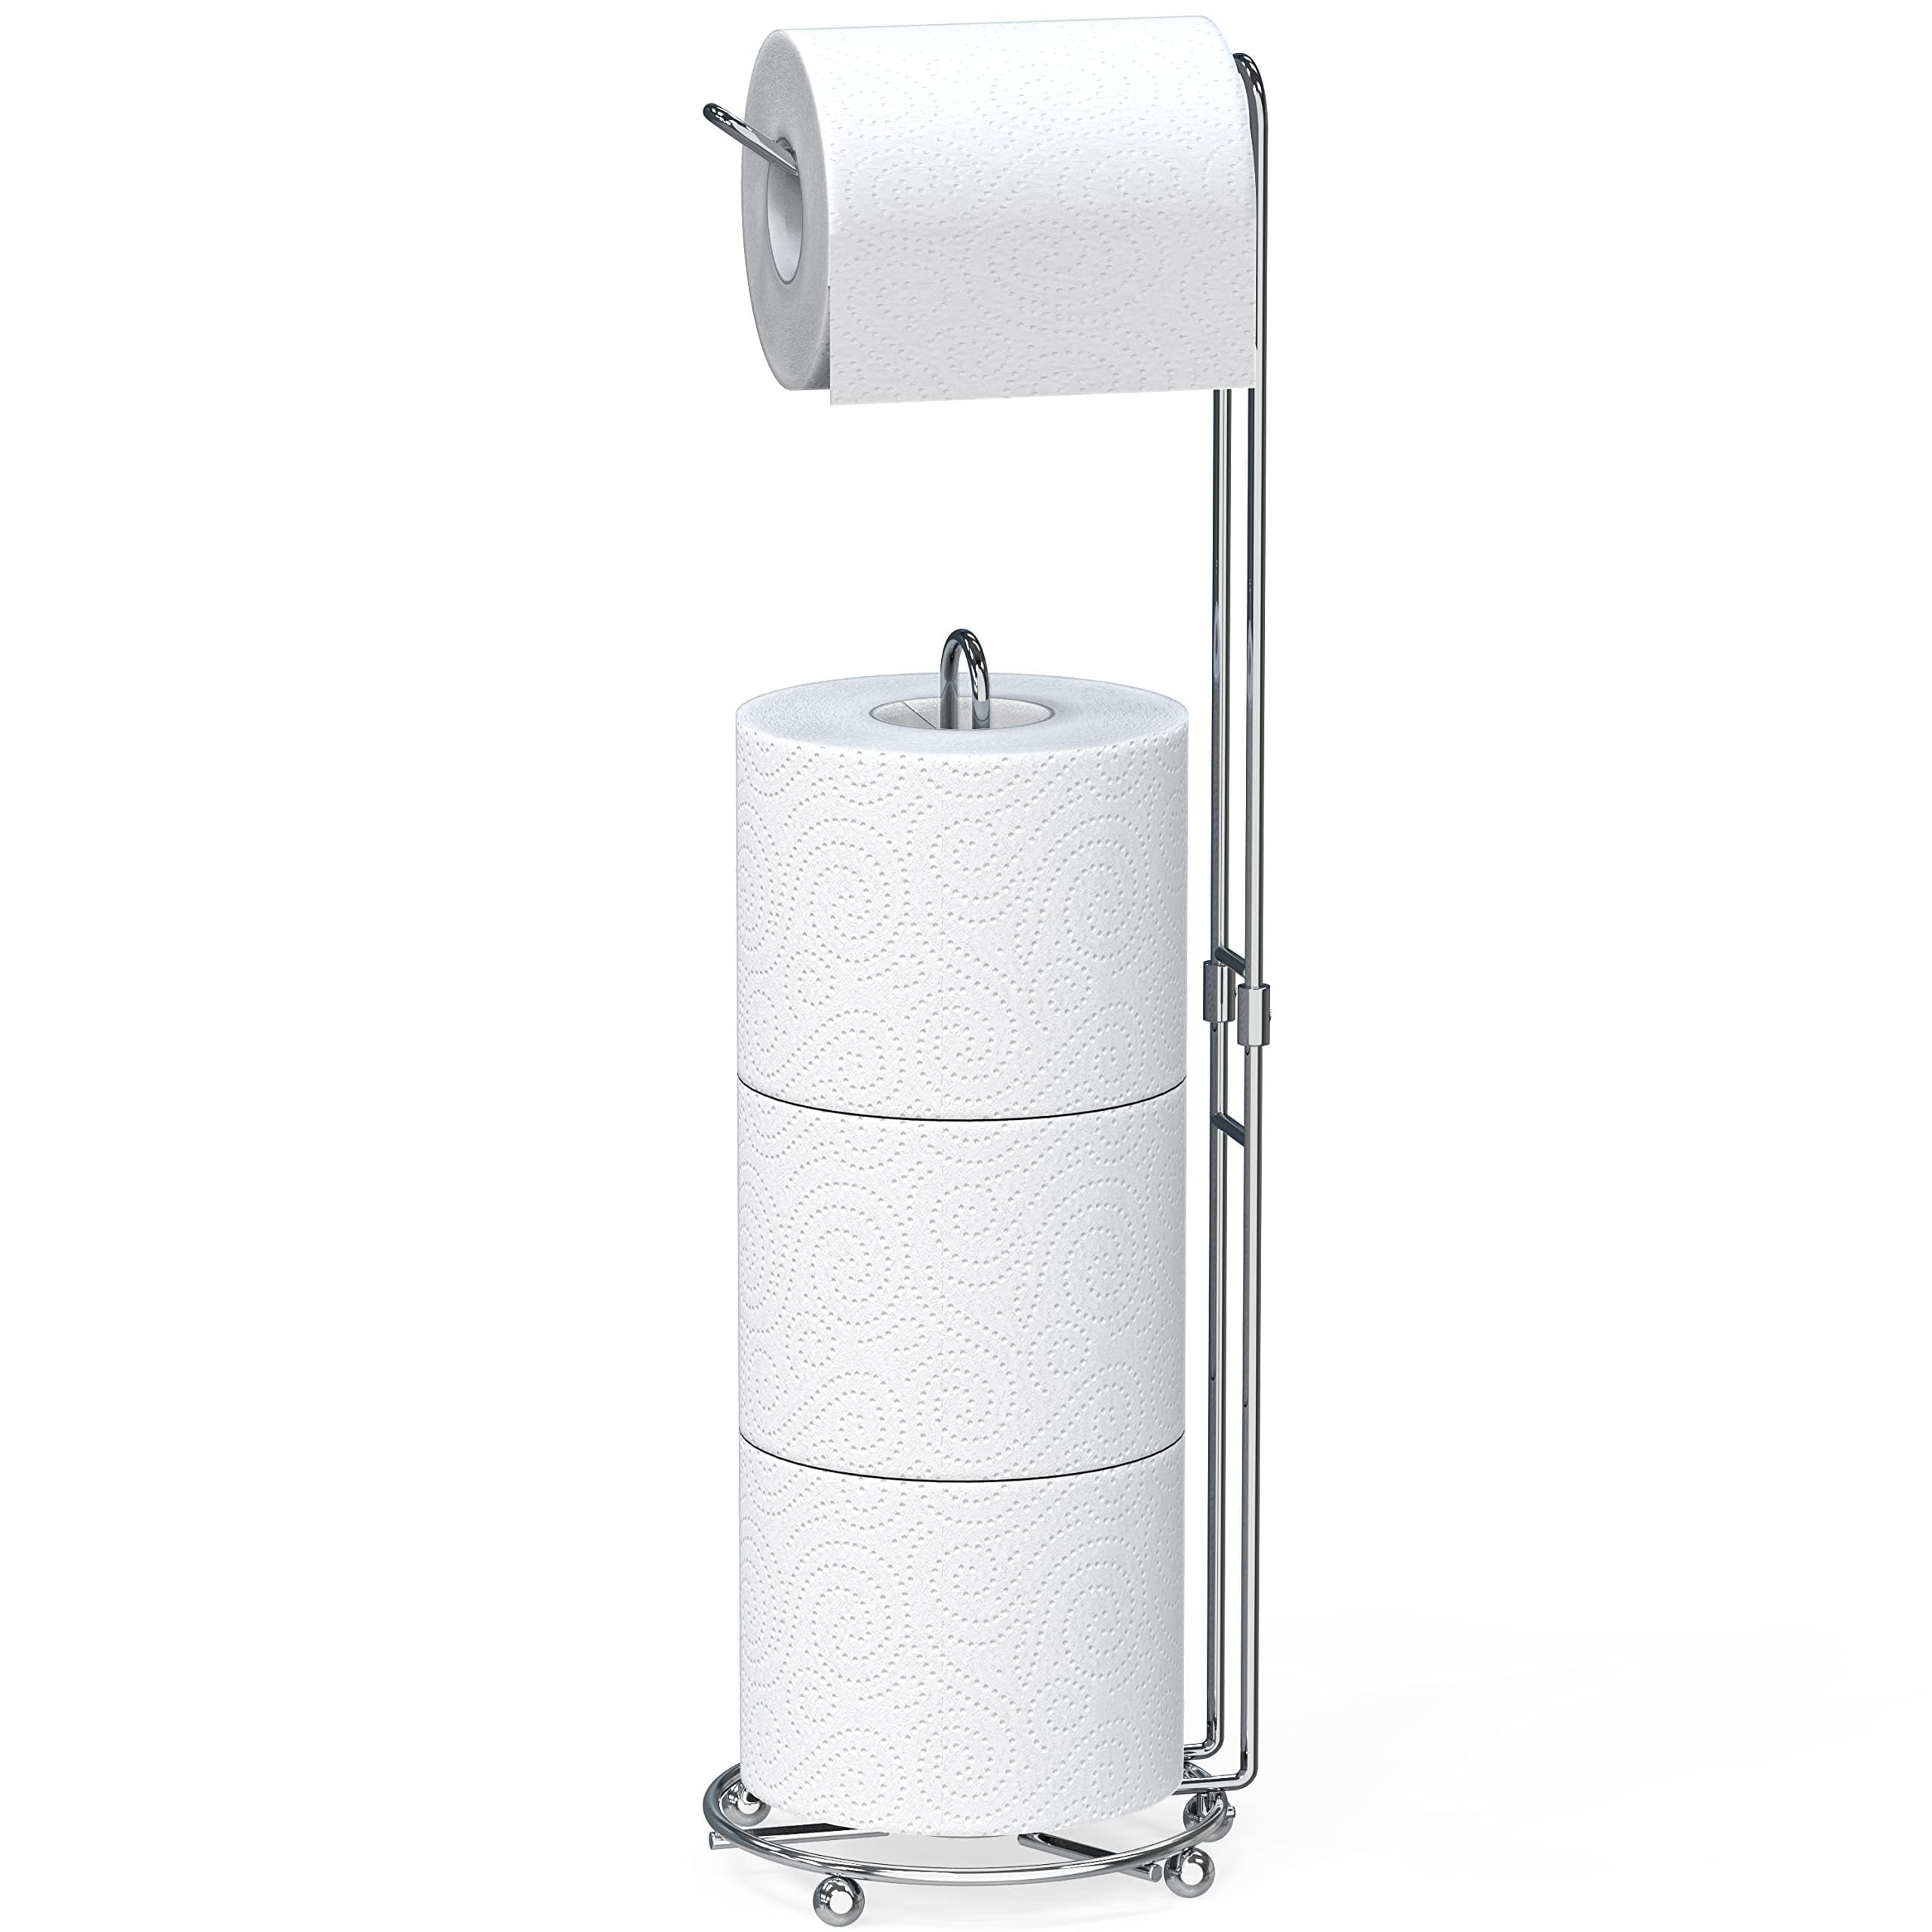 SimpleHouseware Toilet Paper Stand Holder Bathroom Tissue Storage ...